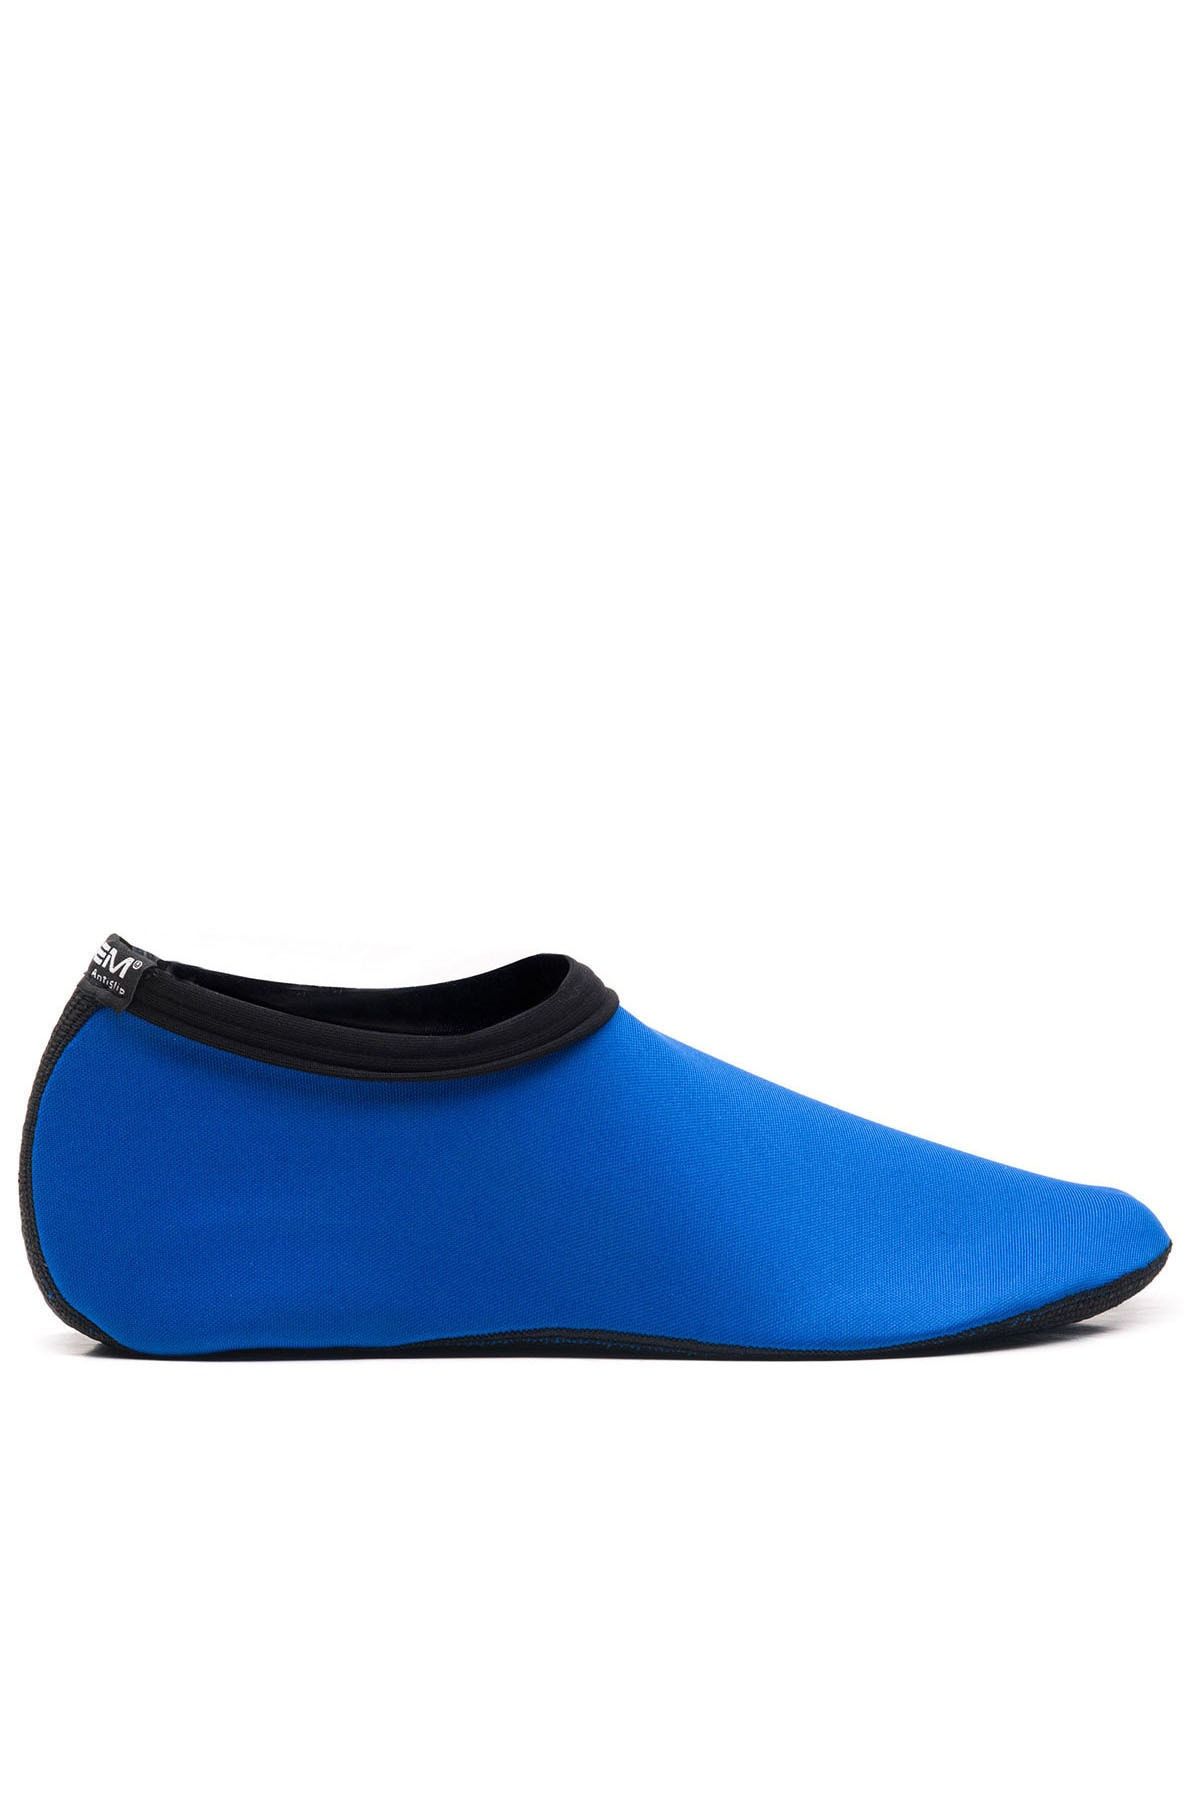 Esem Savana 2 Deniz Ayakkabısı Kadın Ayakkabı Mavi